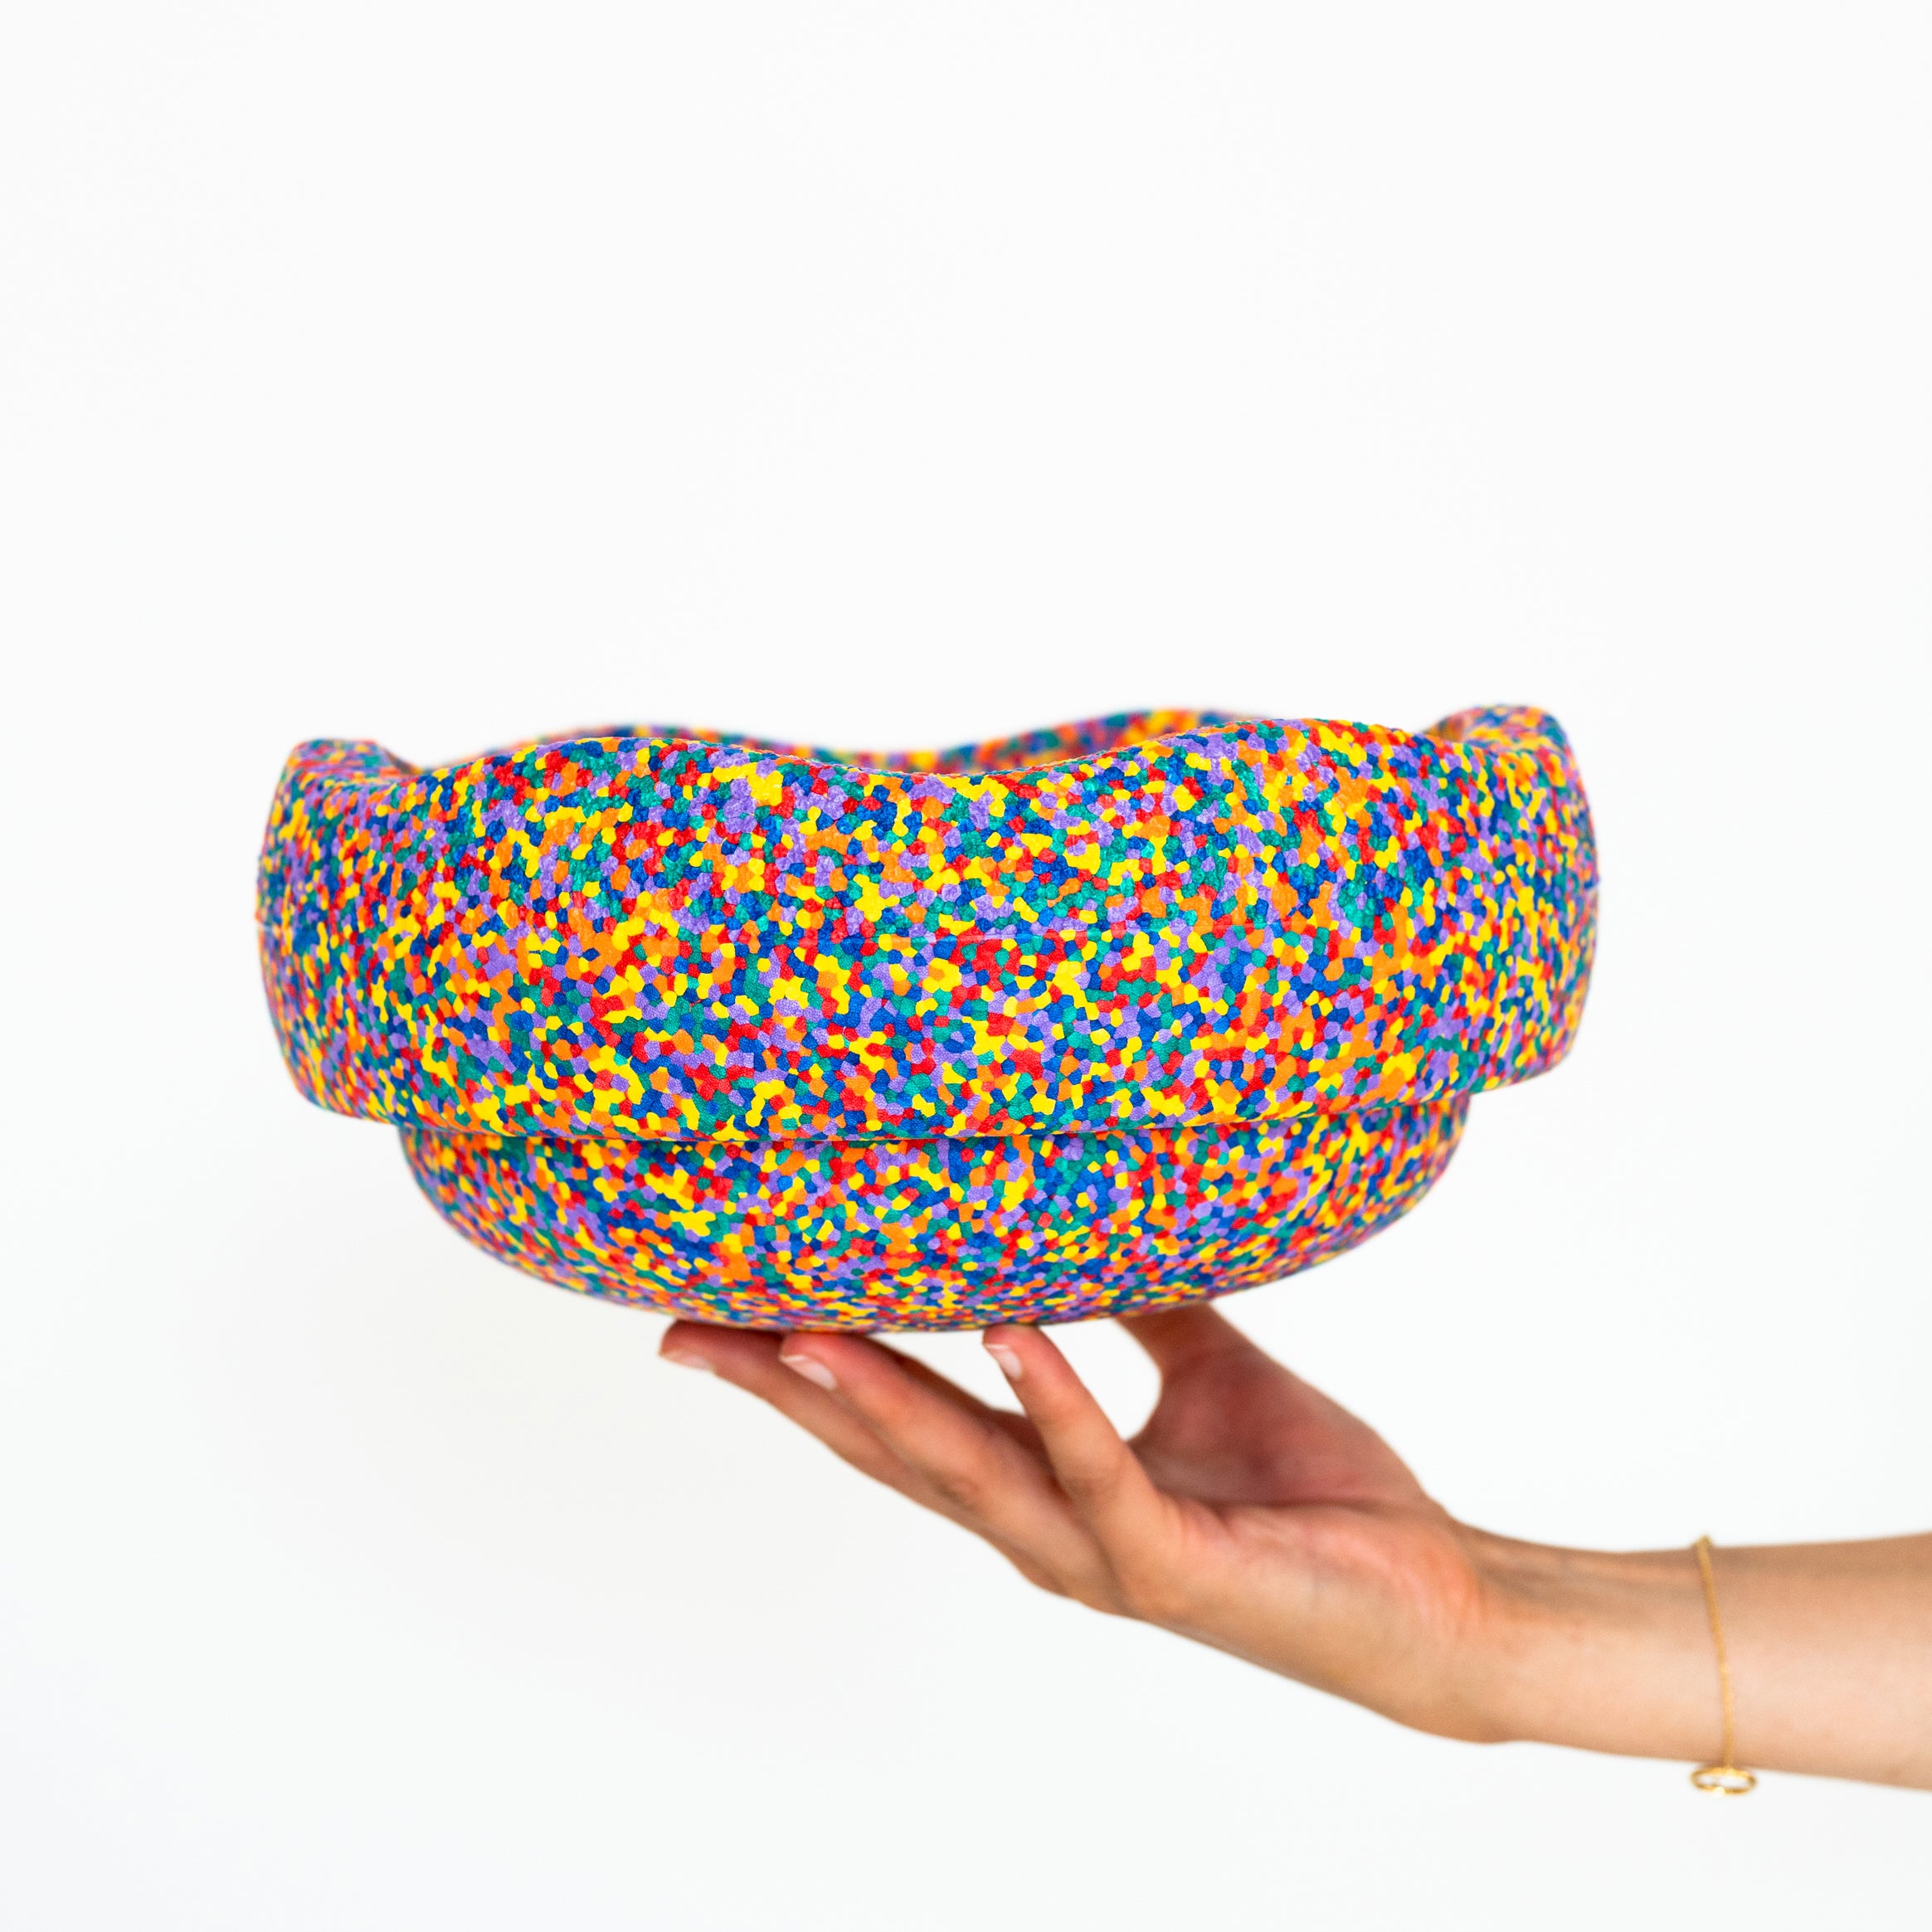 Stapelstein Original confetti classic is het perfecte, duurzame, open einde speelgoed. Gebruik de steen om te balanceren, te bouwen of als krukje of opstapje; de mogelijkheden zijn eindeloos. VanZus.